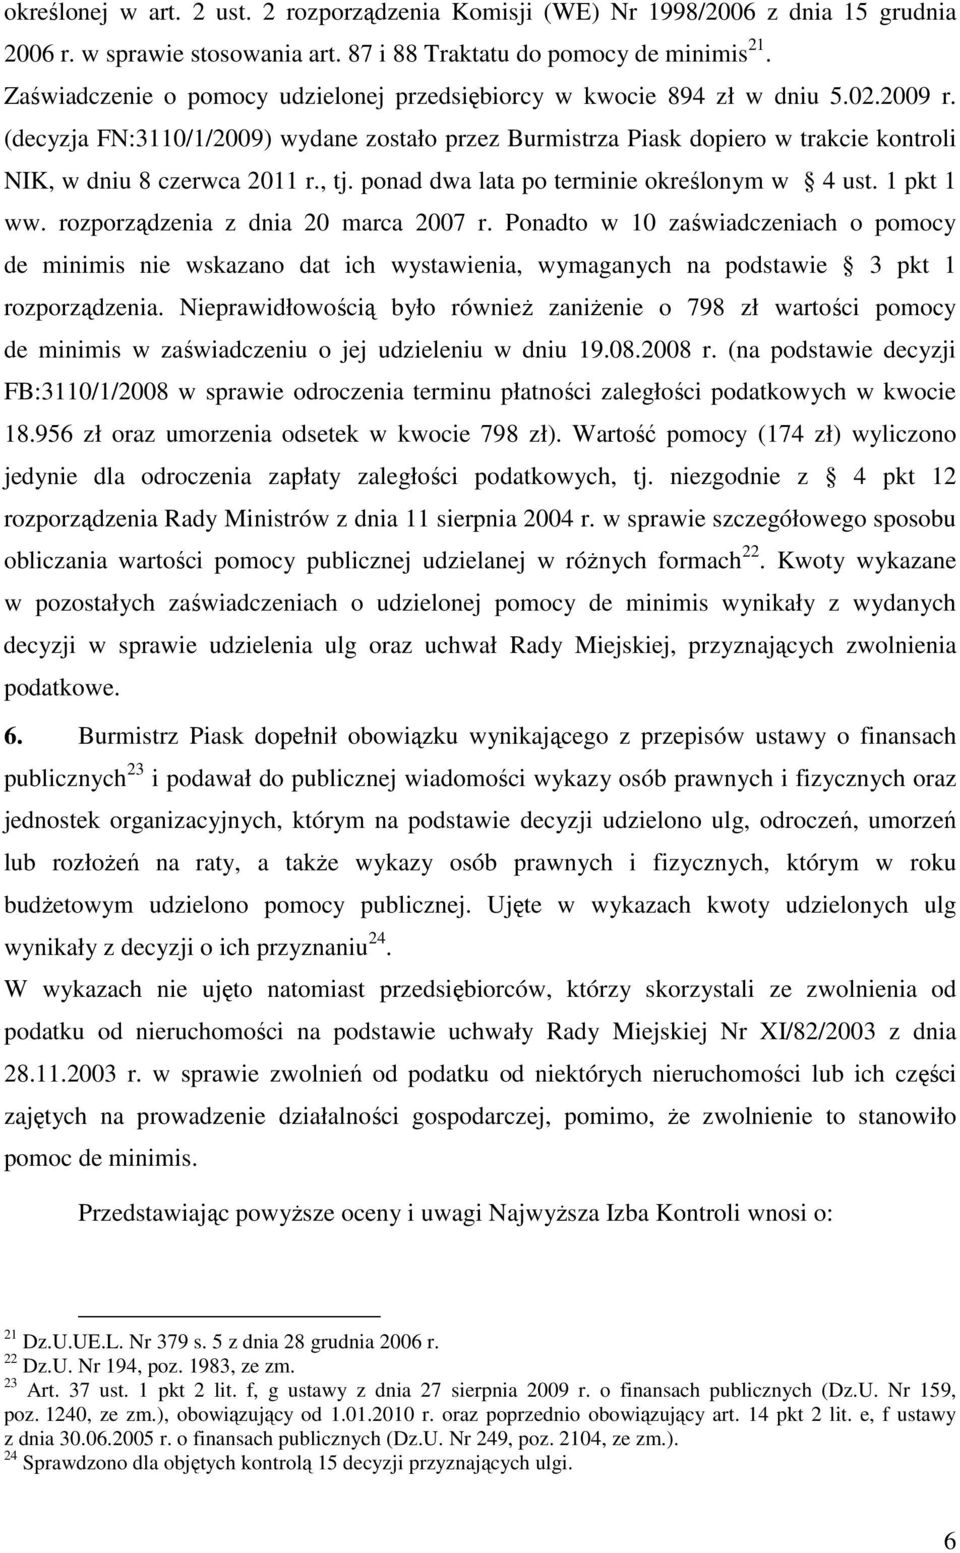 (decyzja FN:3110/1/2009) wydane zostało przez Burmistrza Piask dopiero w trakcie kontroli NIK, w dniu 8 czerwca 2011 r., tj. ponad dwa lata po terminie określonym w 4 ust. 1 pkt 1 ww.